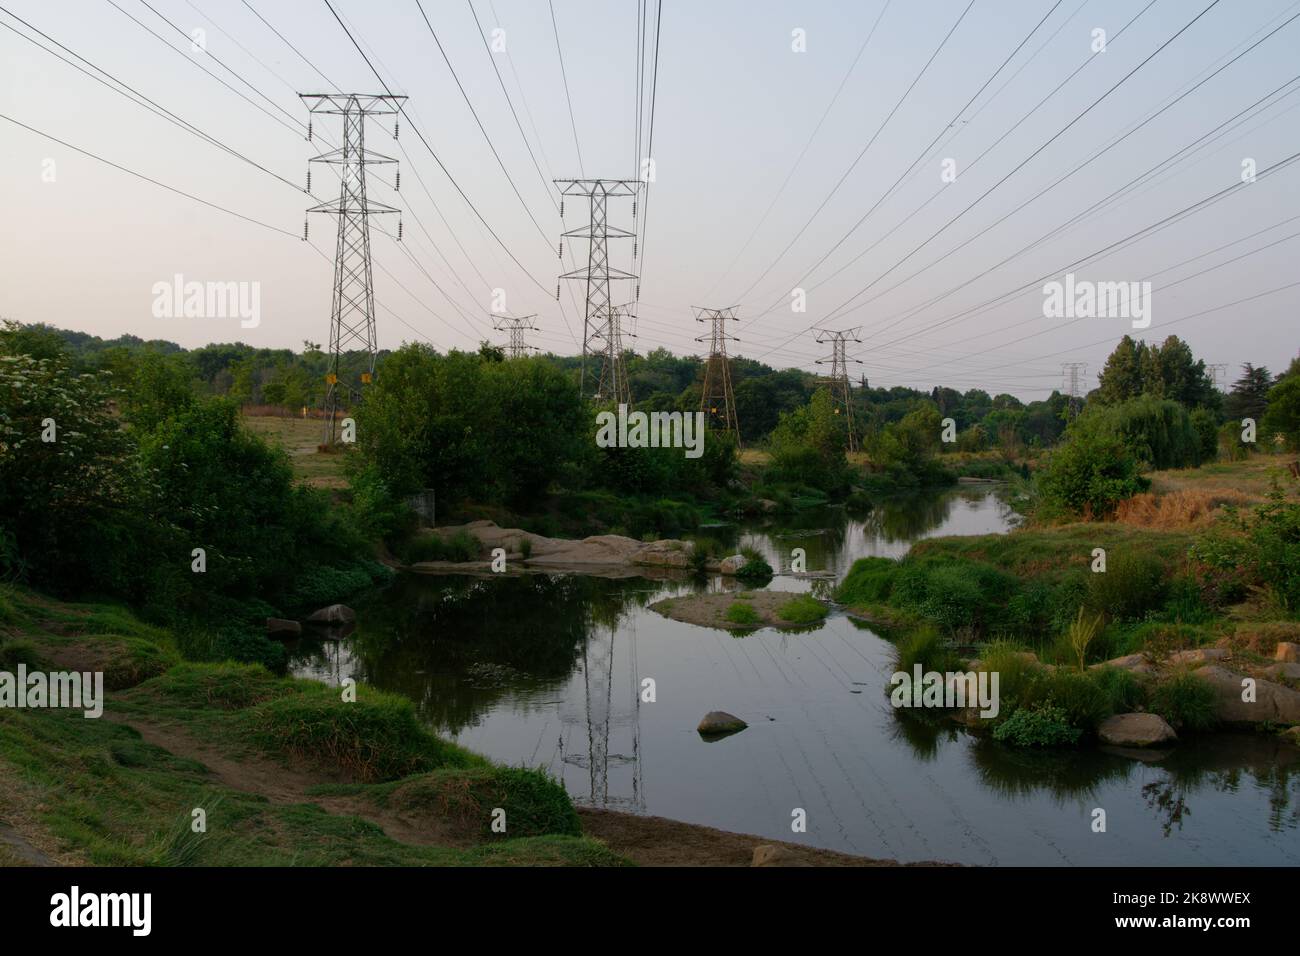 Eine angenehme Flusslandschaft, die von großen elektrischen Masten und Hochspannungsfreileitungen überschattet wird. Stockfoto